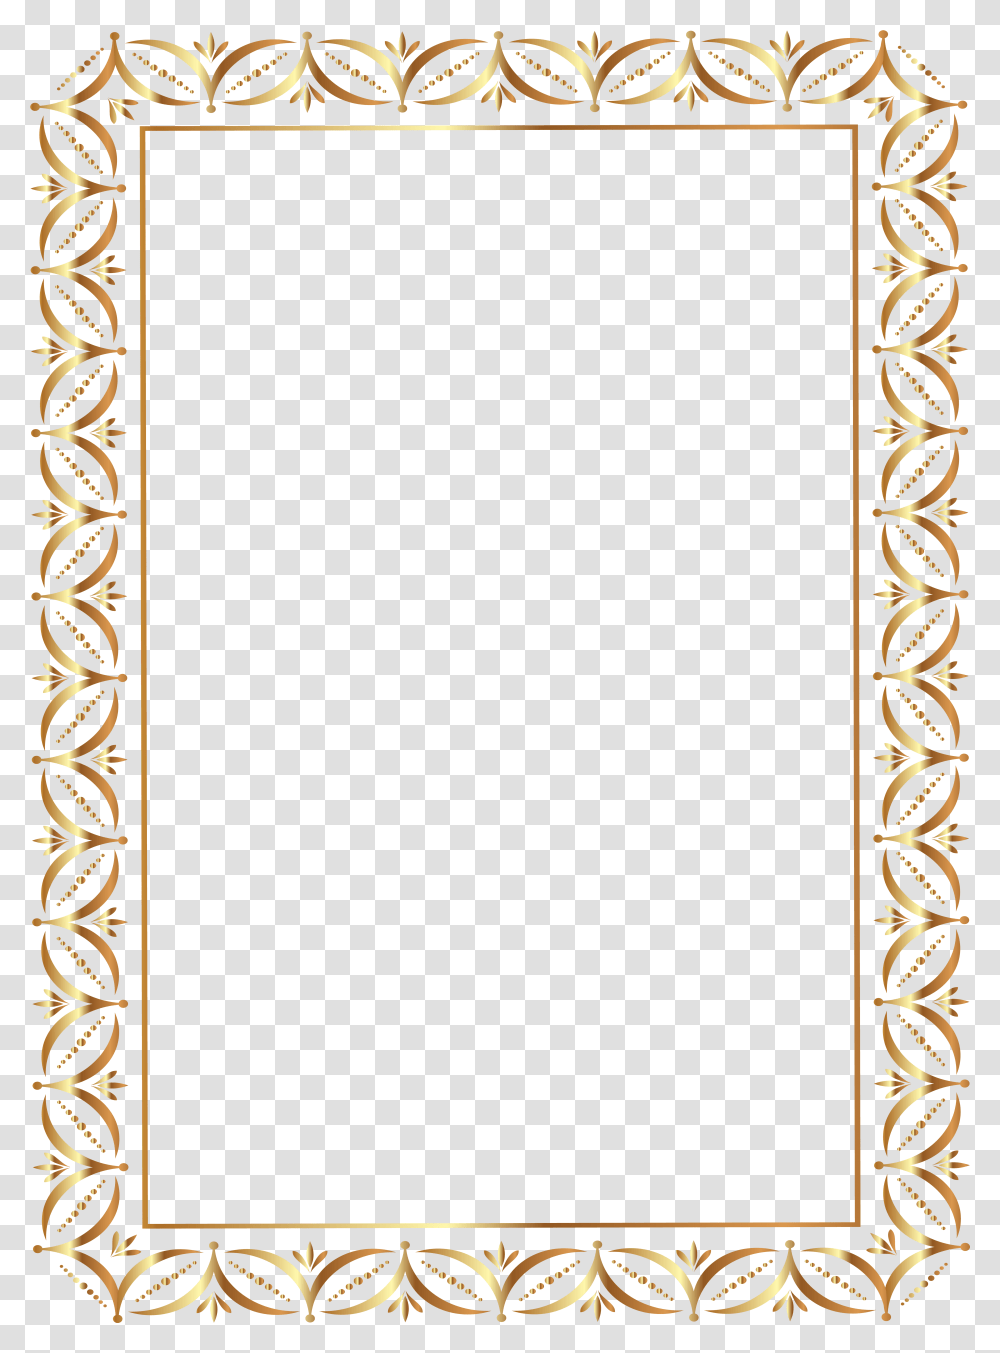 Gold Border Frame Clip Art Image Border Frame Transparent Png